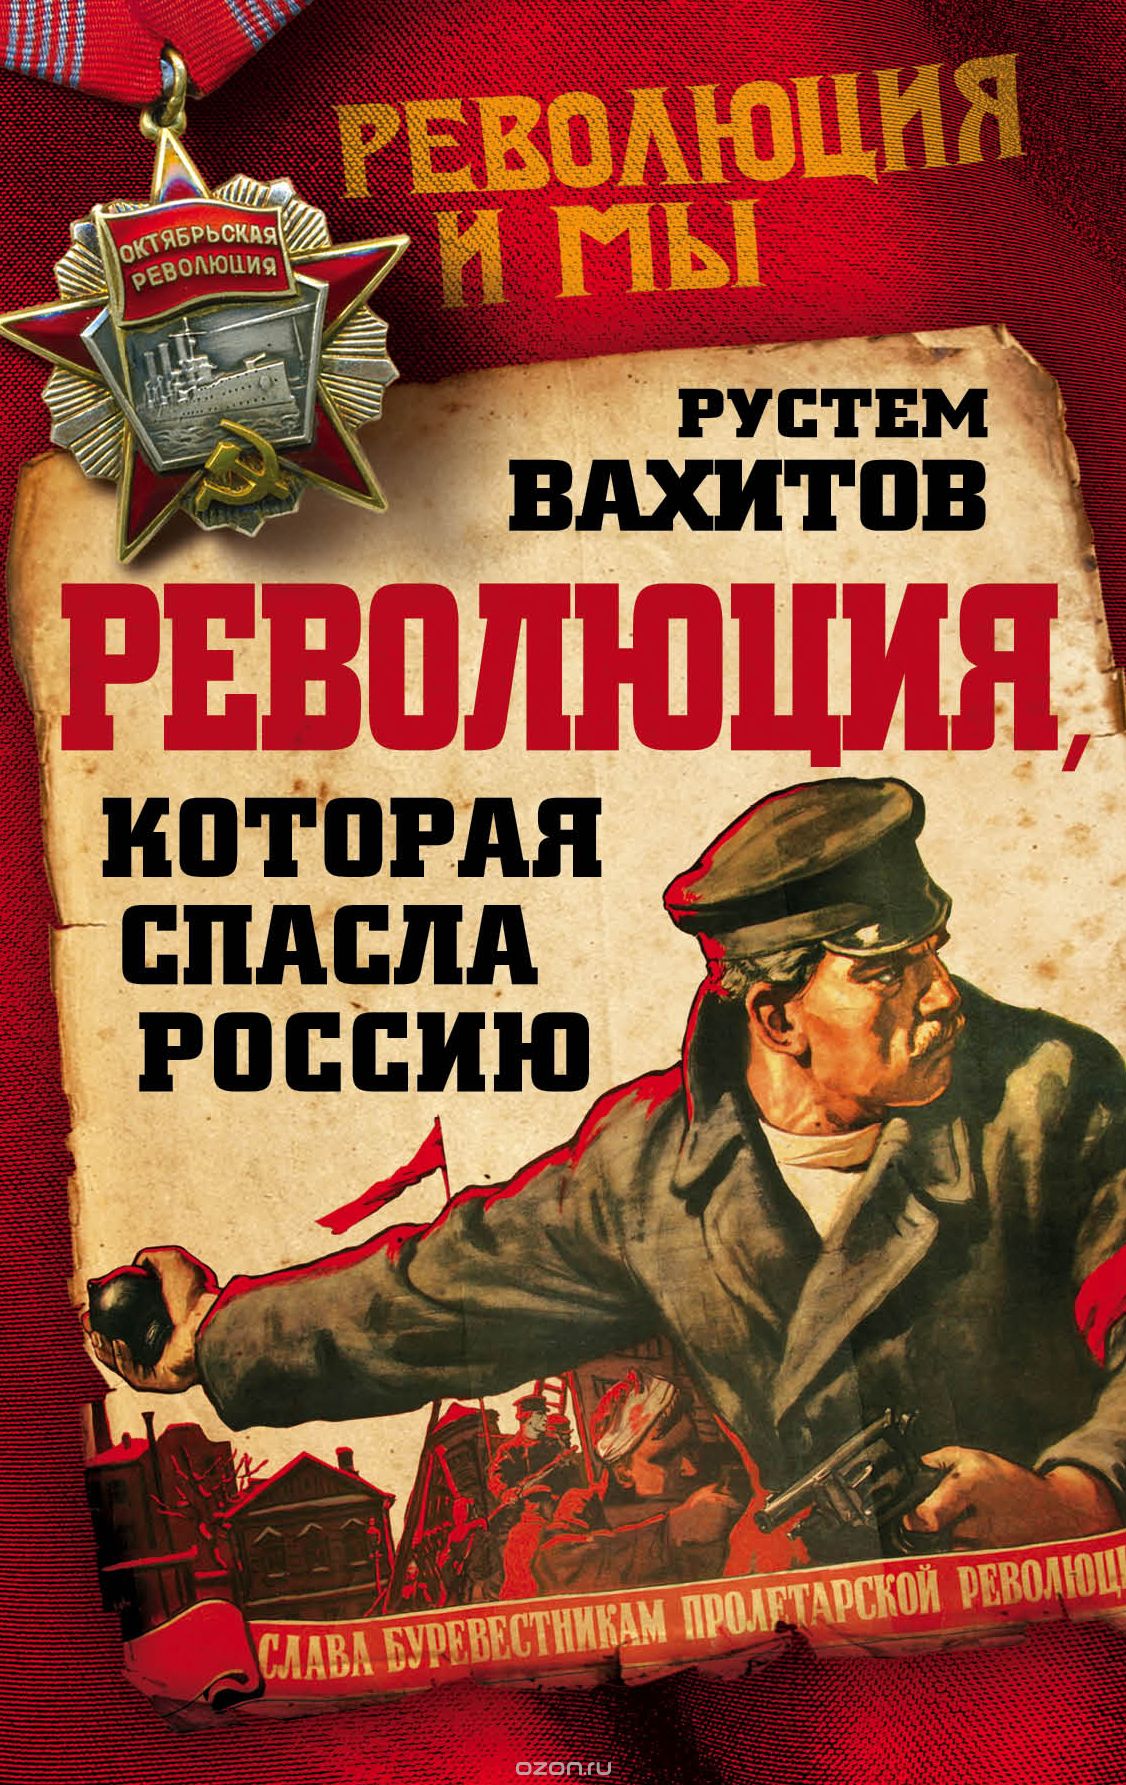 Скачать книгу "Революция, которая спасла Россию, Вахитов Рустем Ринатович"